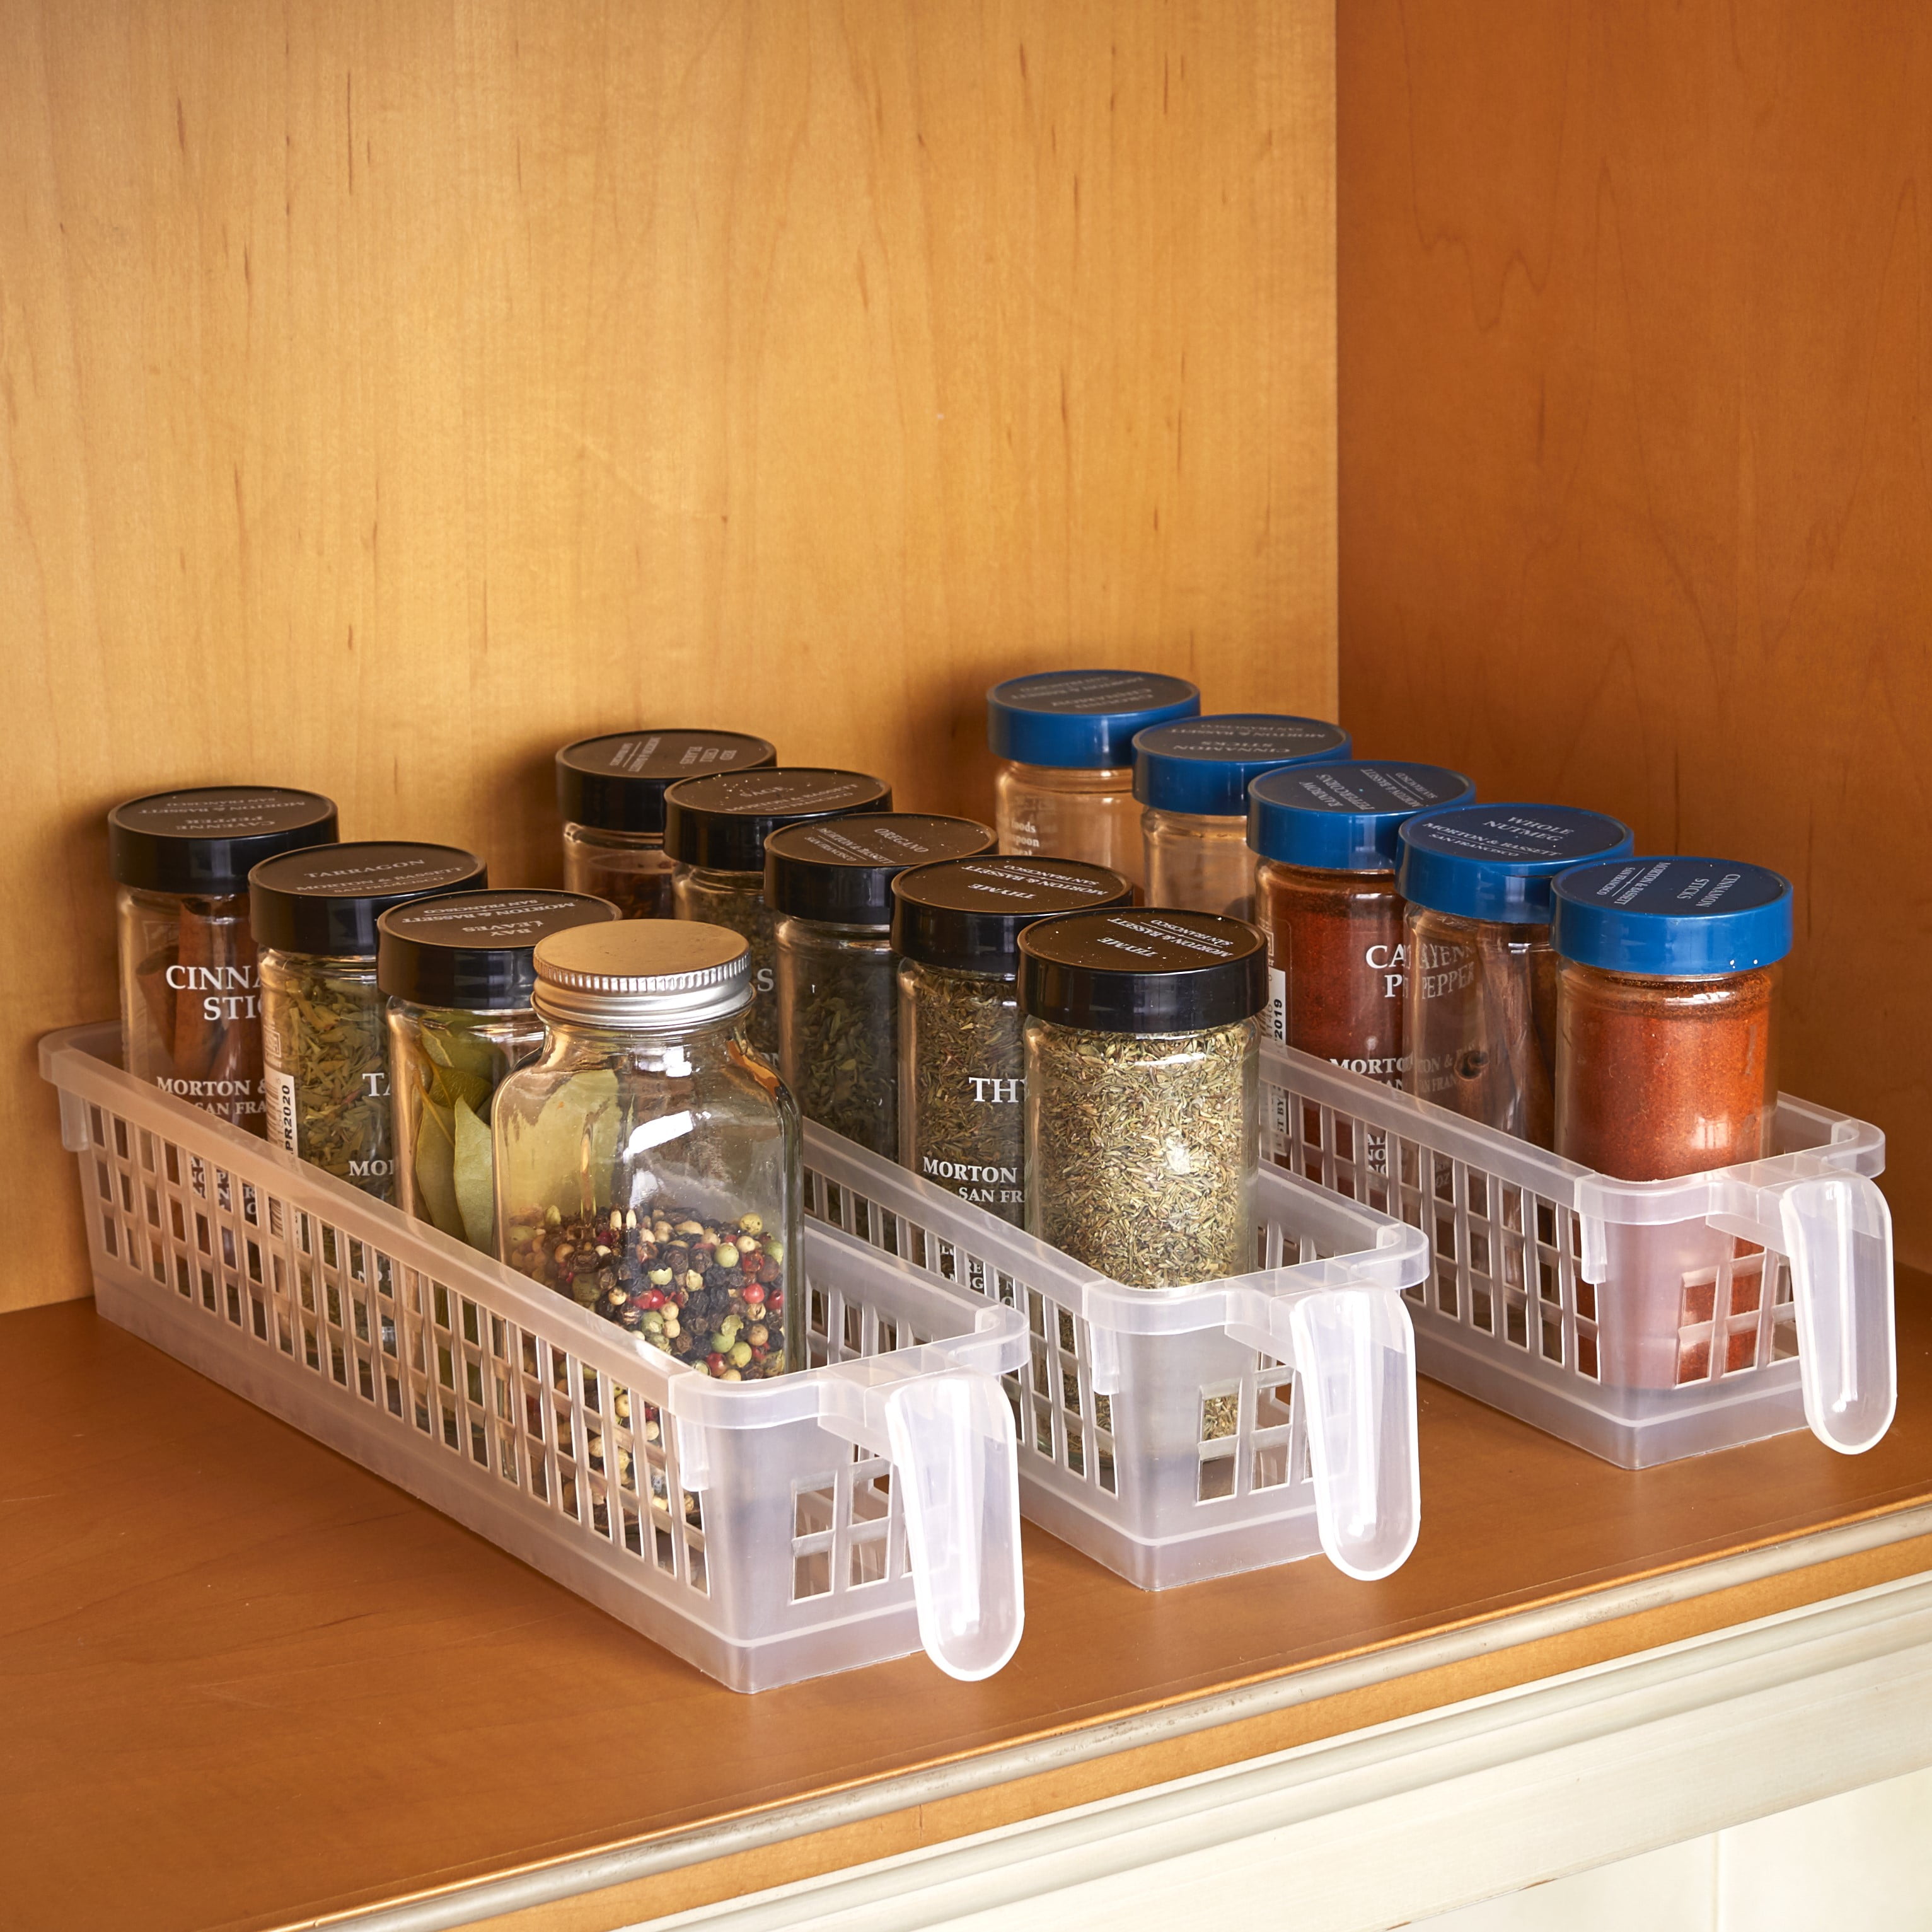 1pc Wall-mounted Under-Shelf Spice Organizer Spice Bottle Storage Rack Kitchen